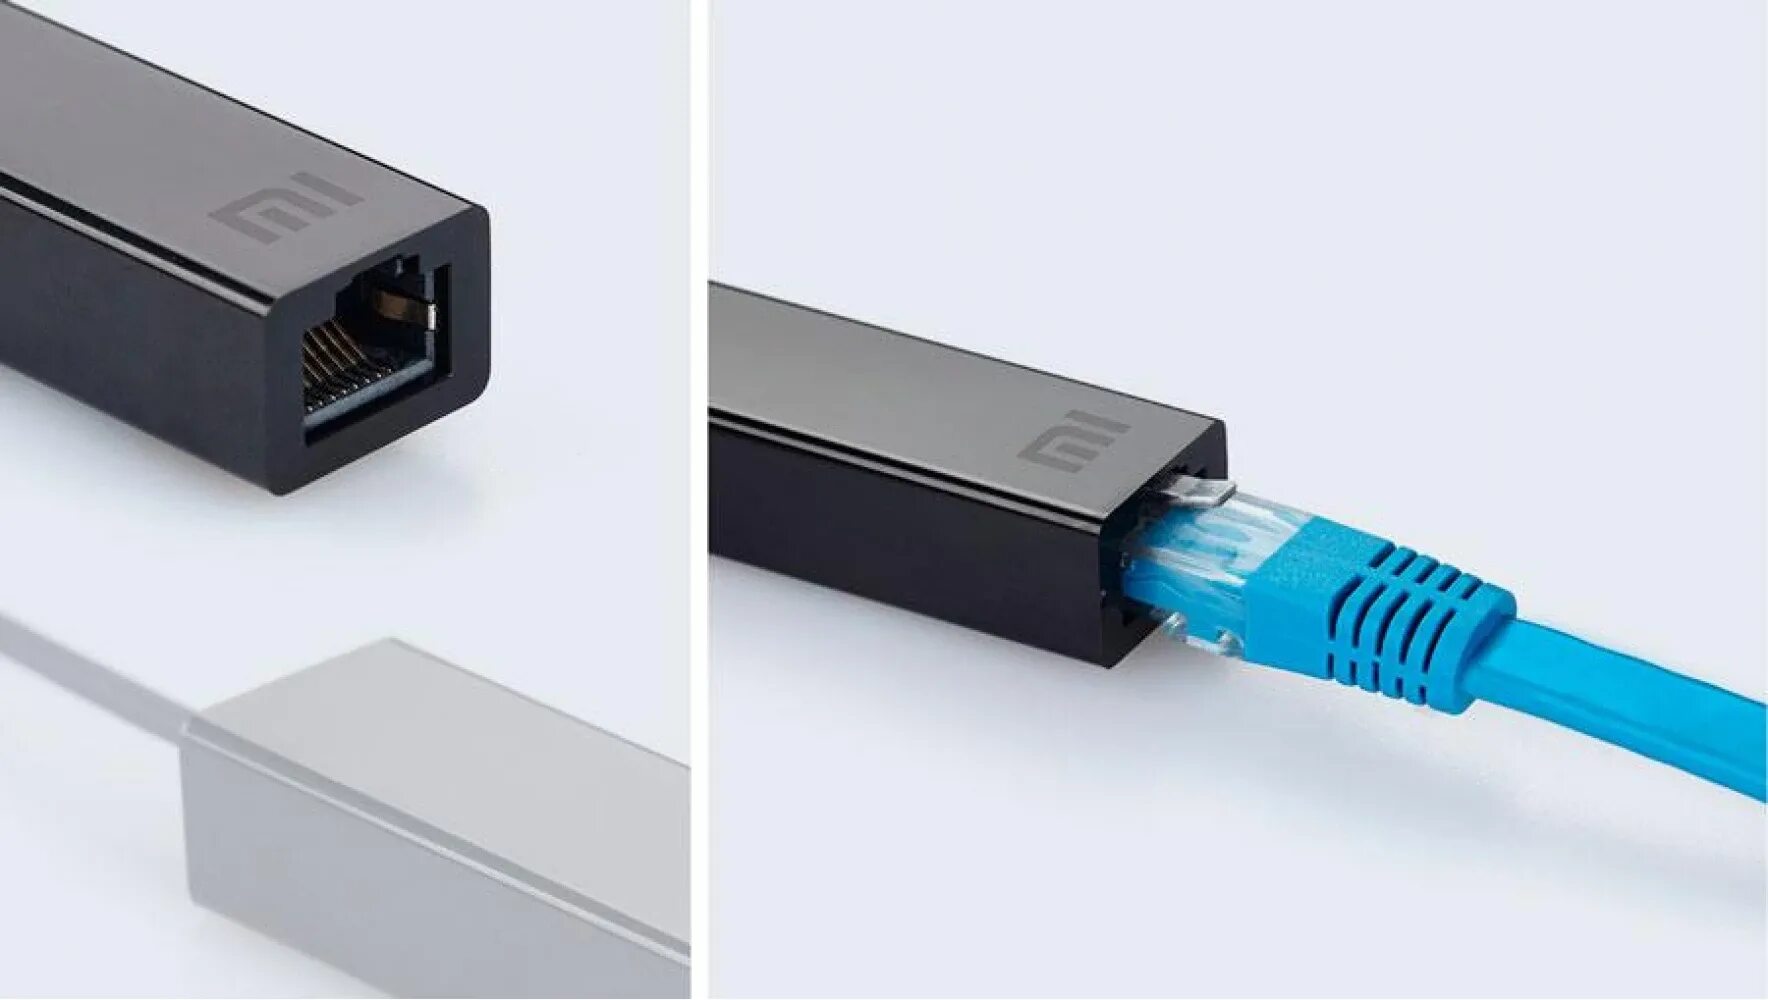 USB lan rj45 адаптер для модема. Переходник USB rj45 Ethernet. Сетевой адаптер lan USB - Ethernet rj45 10/100 Мбит/с 15см. USB 2.0/rj45 10/100m Ethernet. Сетевое подключение usb